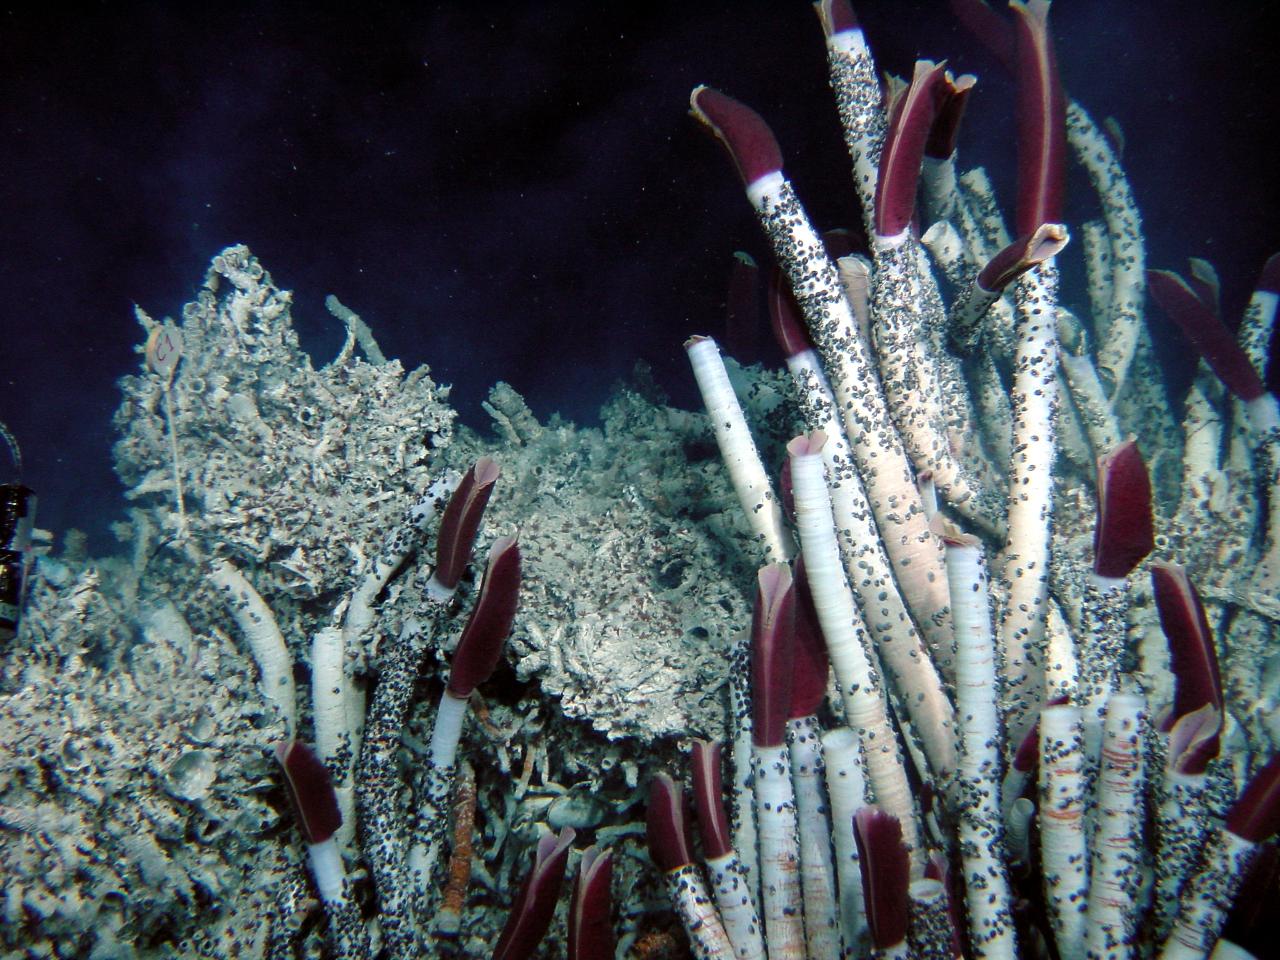 Découverte d’espèces marines surprenantes venues du dessous des fonds océaniques